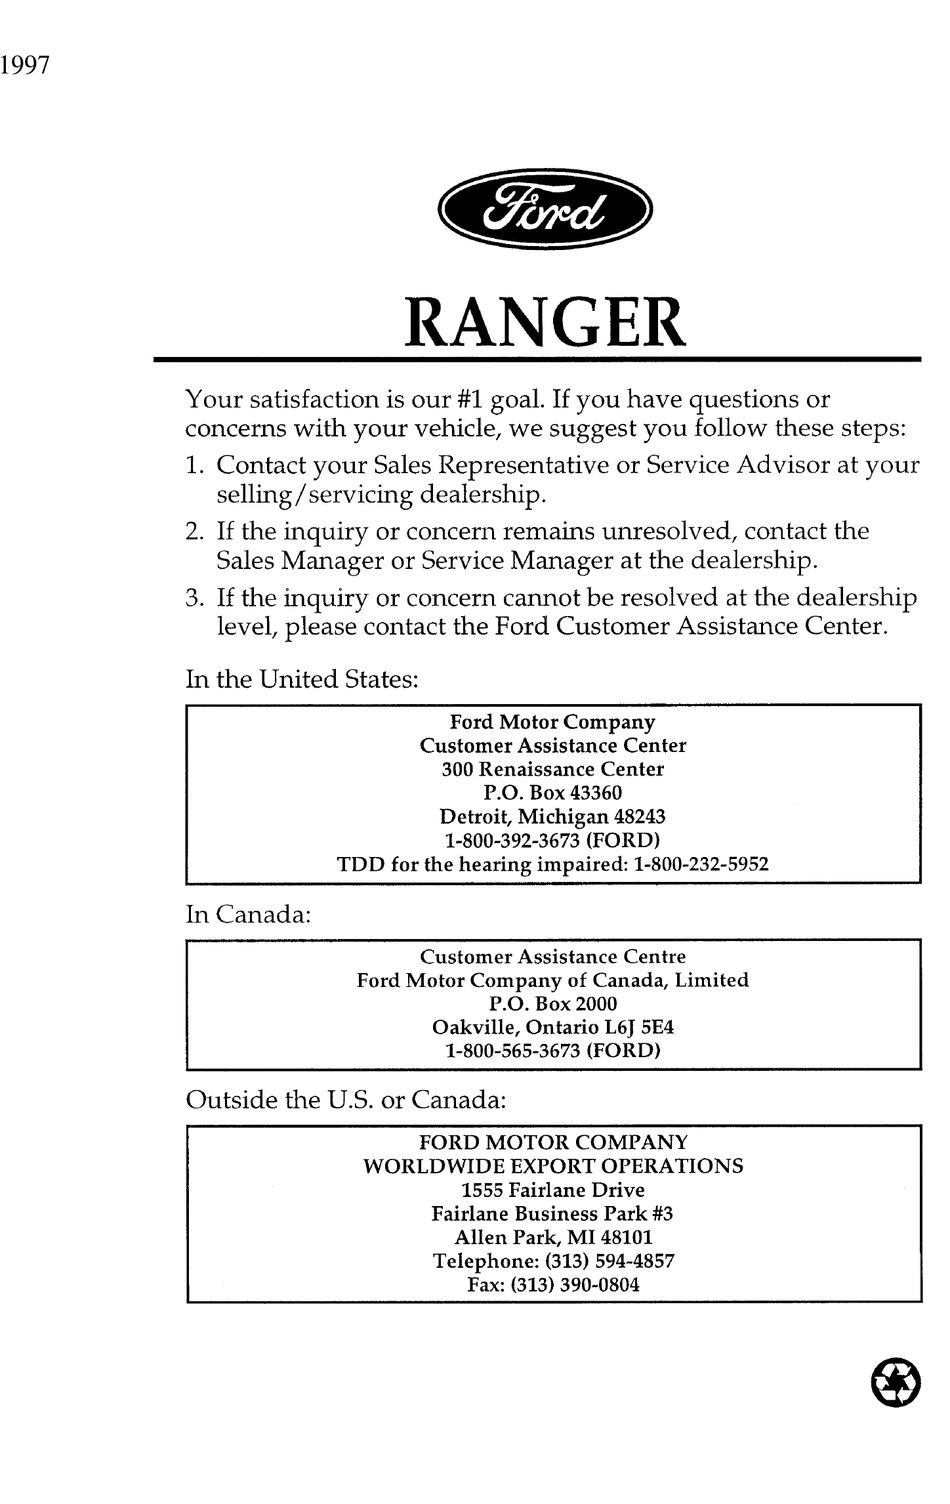 2000 ford ranger repair manual pdf free download